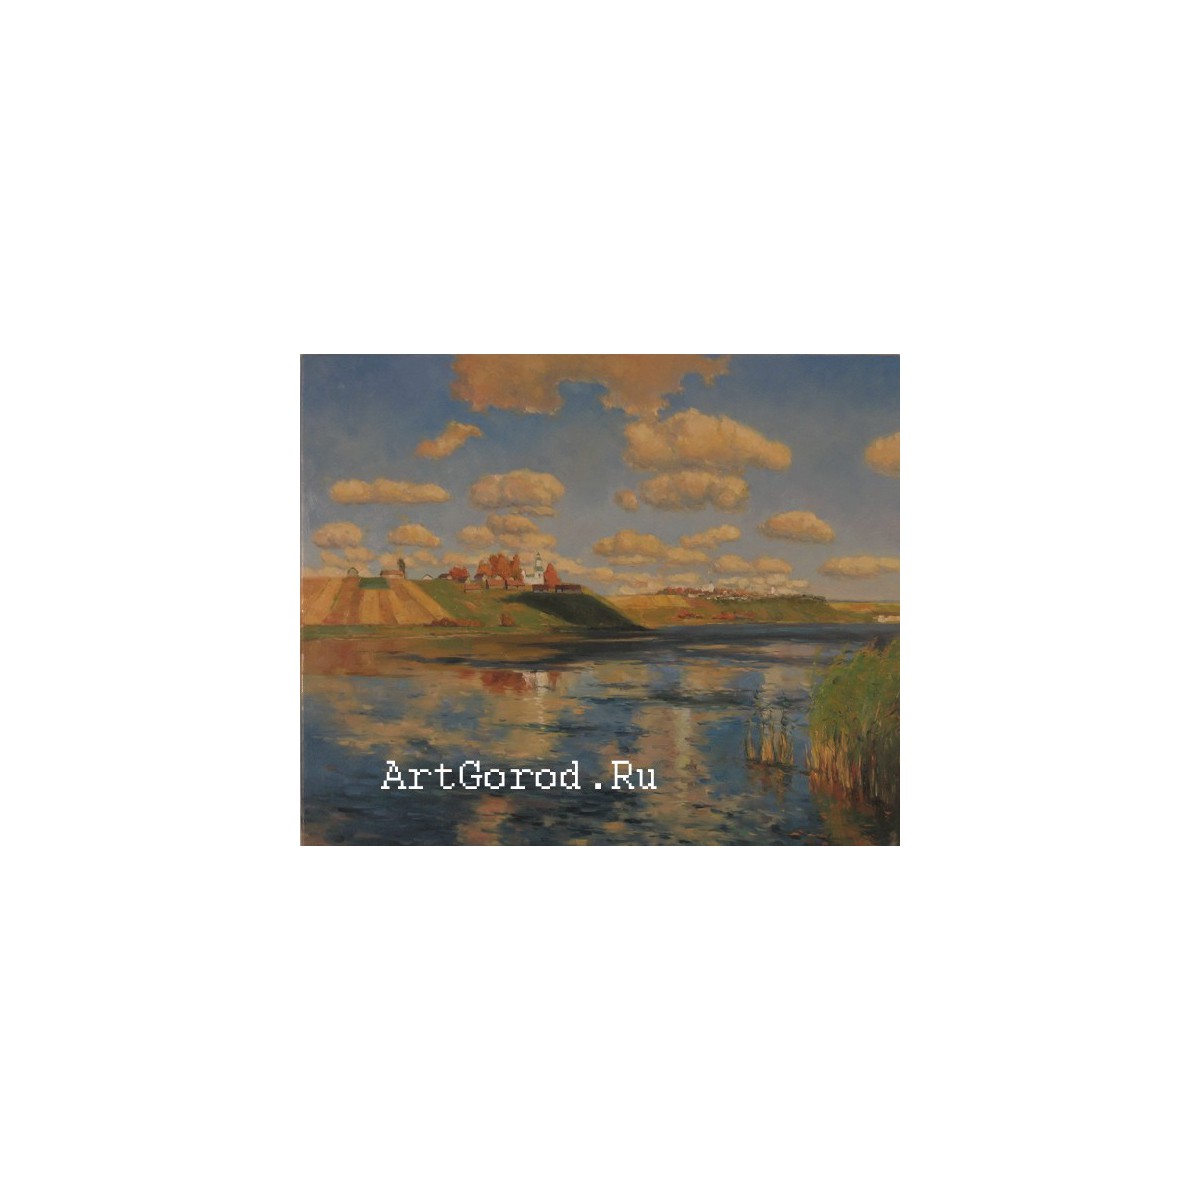 копия картины И. Левитана "Озеро. Русь"